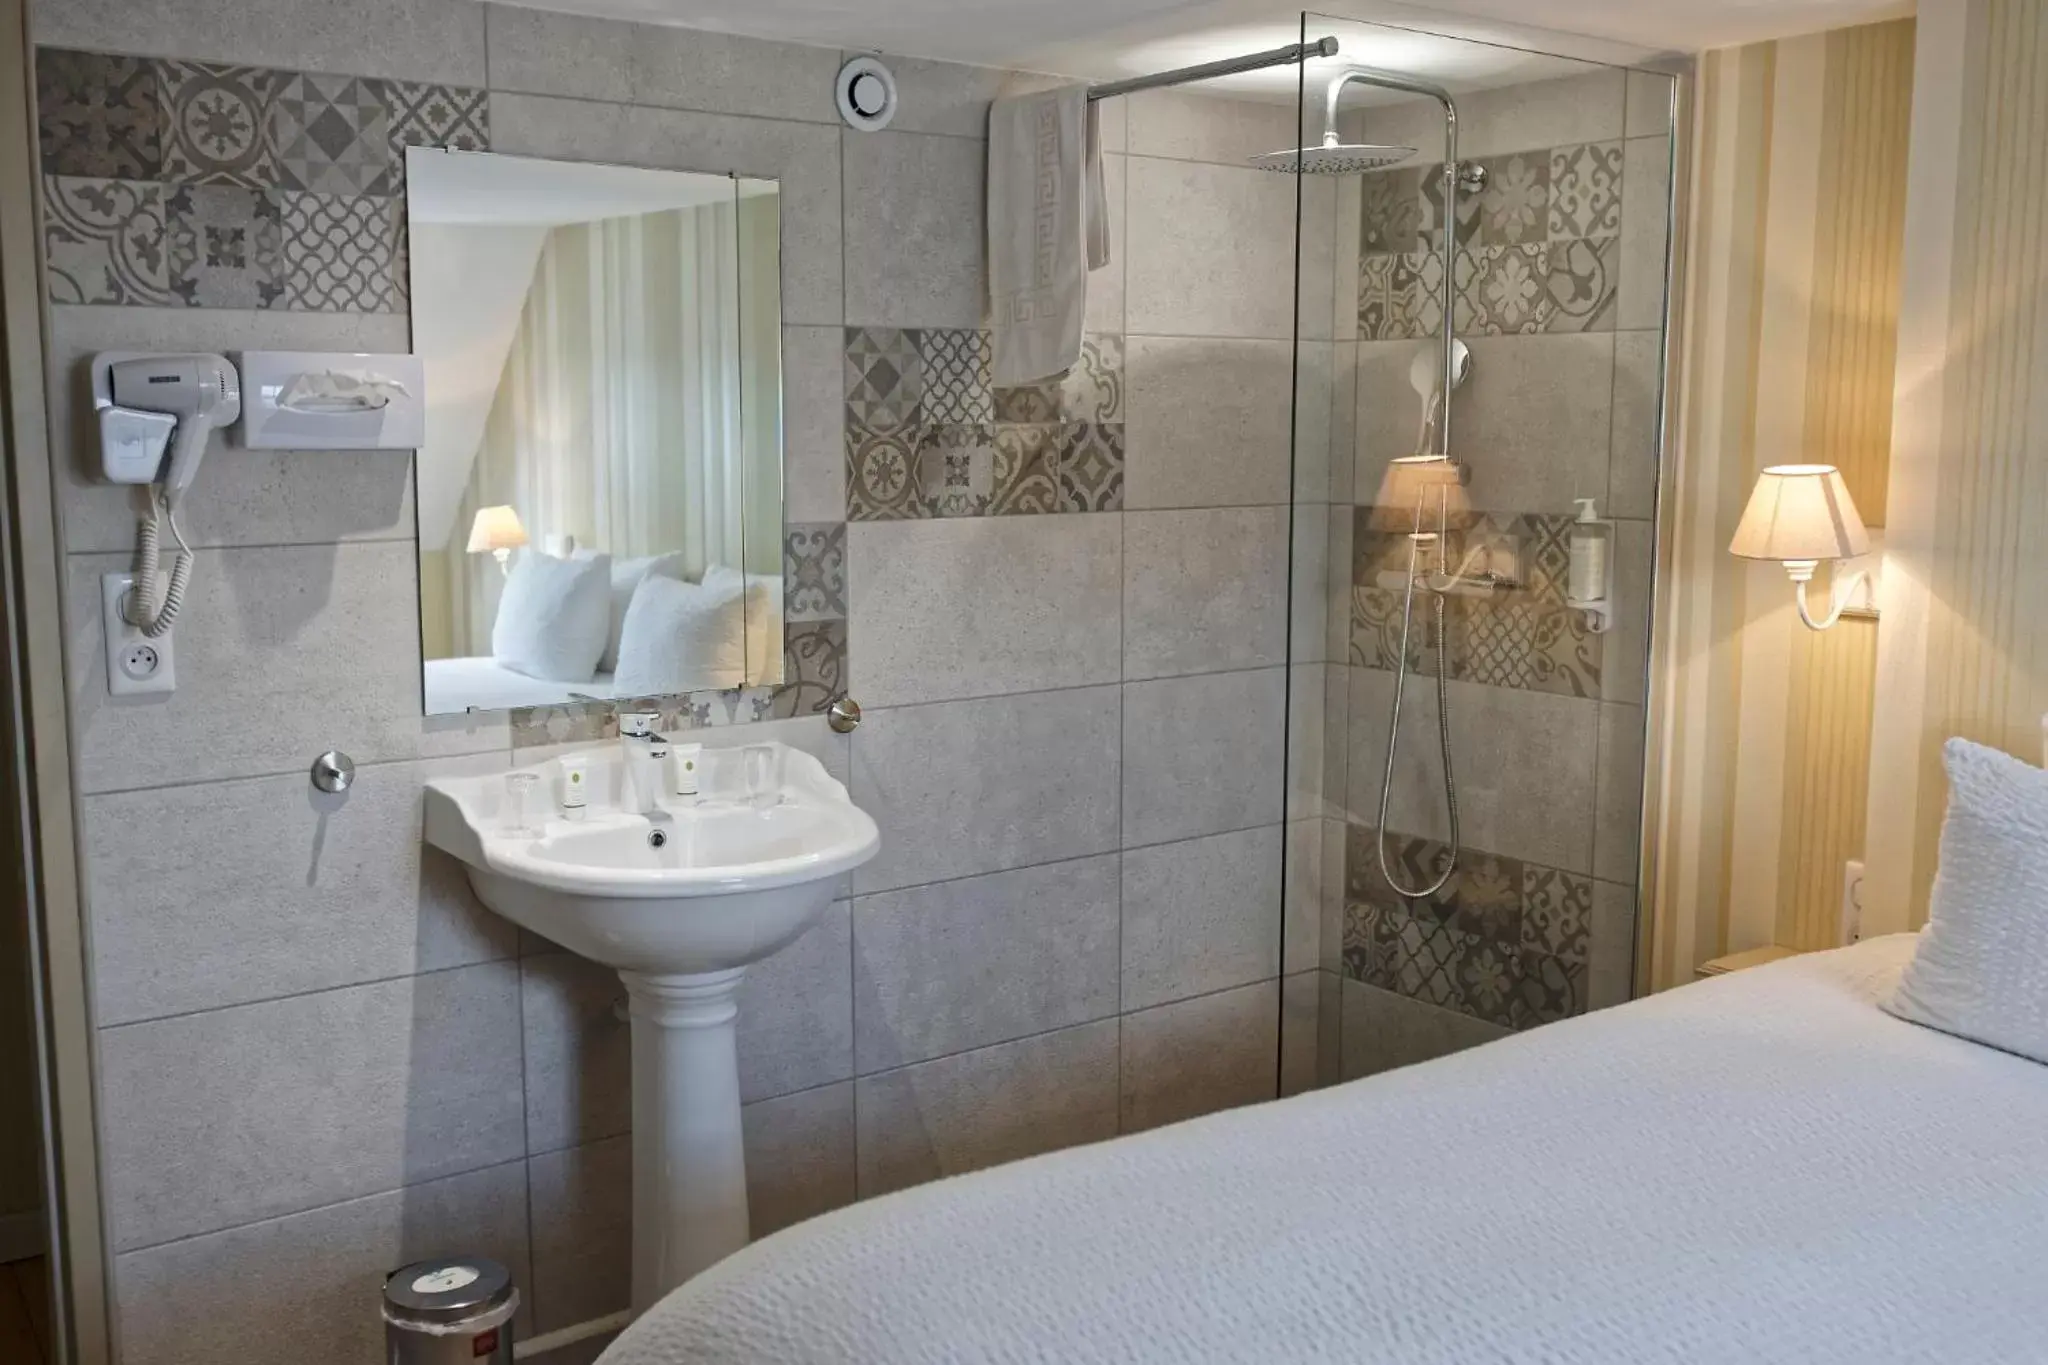 Bedroom, Bathroom in Hotel Saint Georges